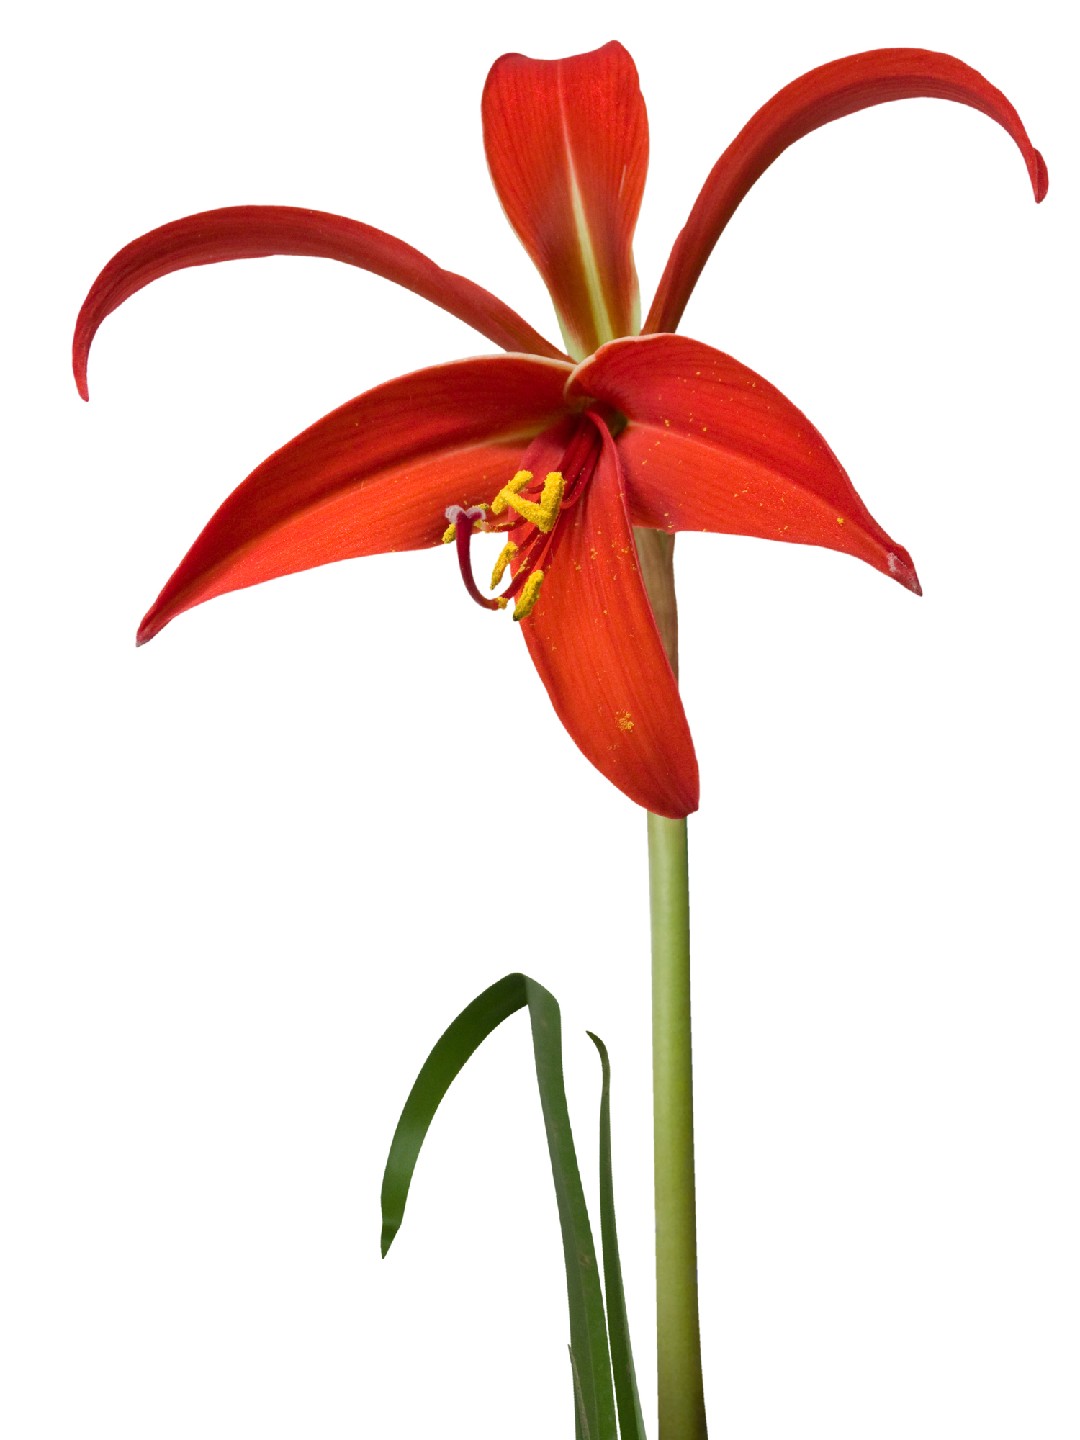 Flor-de-lis (Sprekelia formosissima) - PictureThis